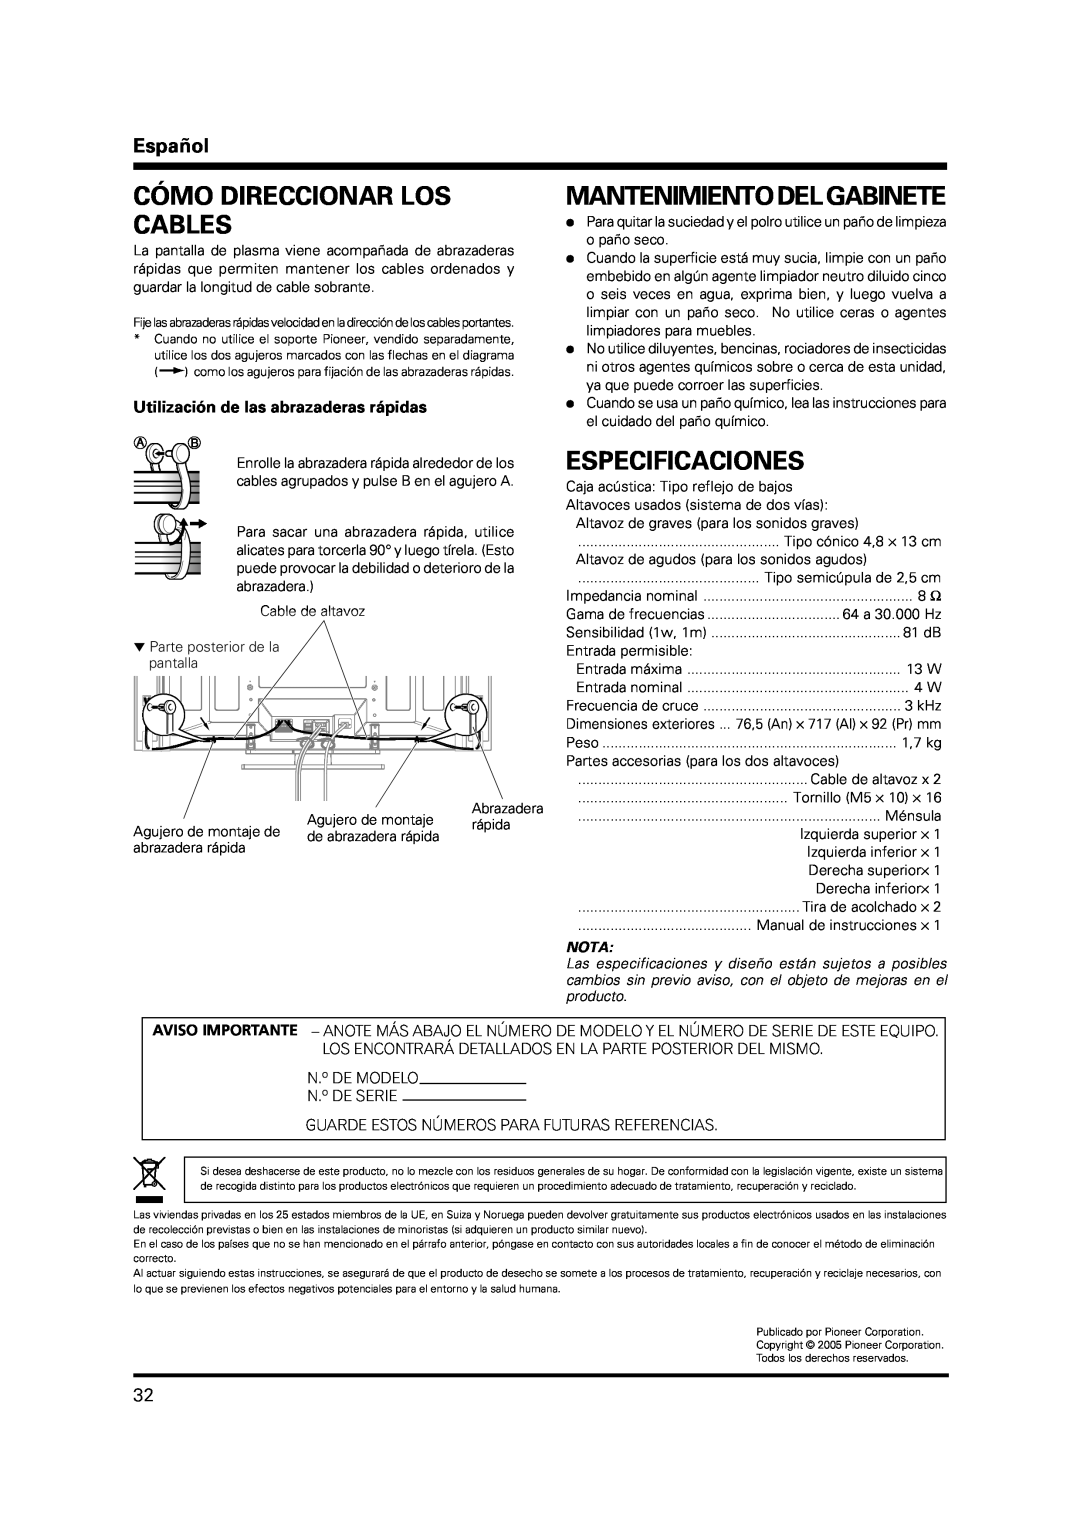 Pioneer PDP-S38 manual Cómo Direccionar Los Cables, Mantenimiento Del Gabinete, Especificaciones, Español, Nota 